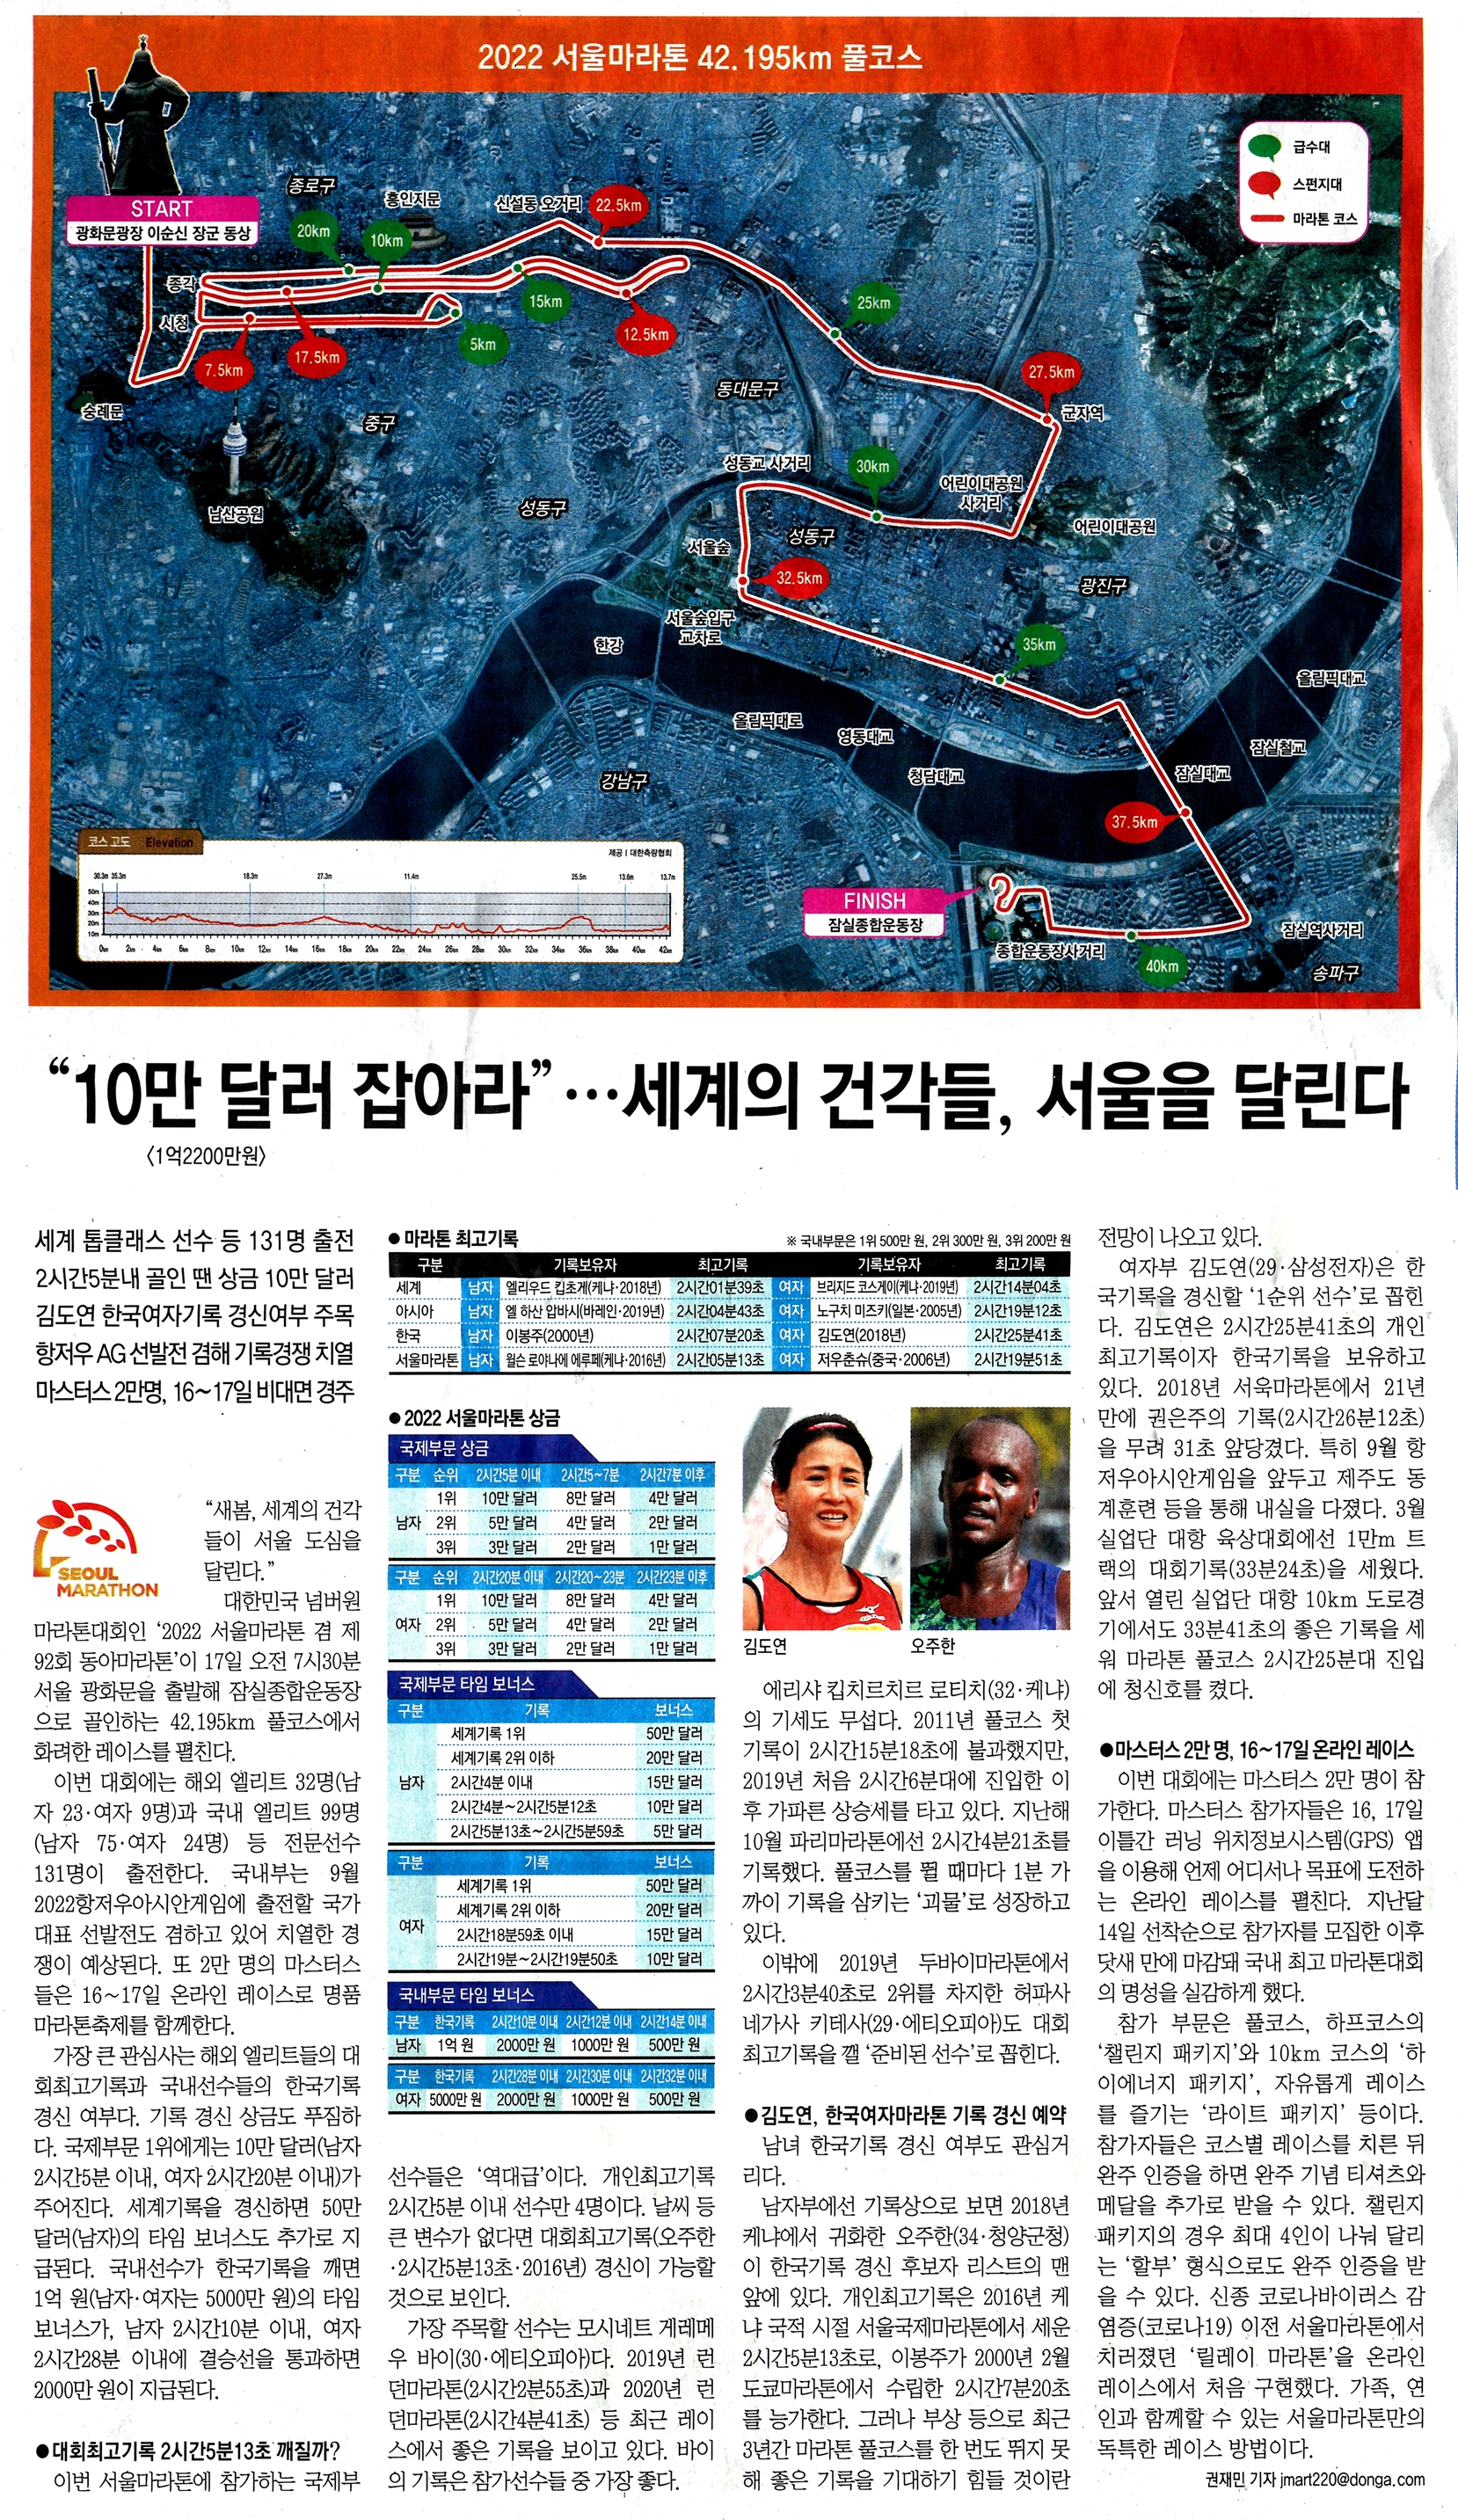 10만 달러 잡아라 세계의 건각들 서울을 달린다.